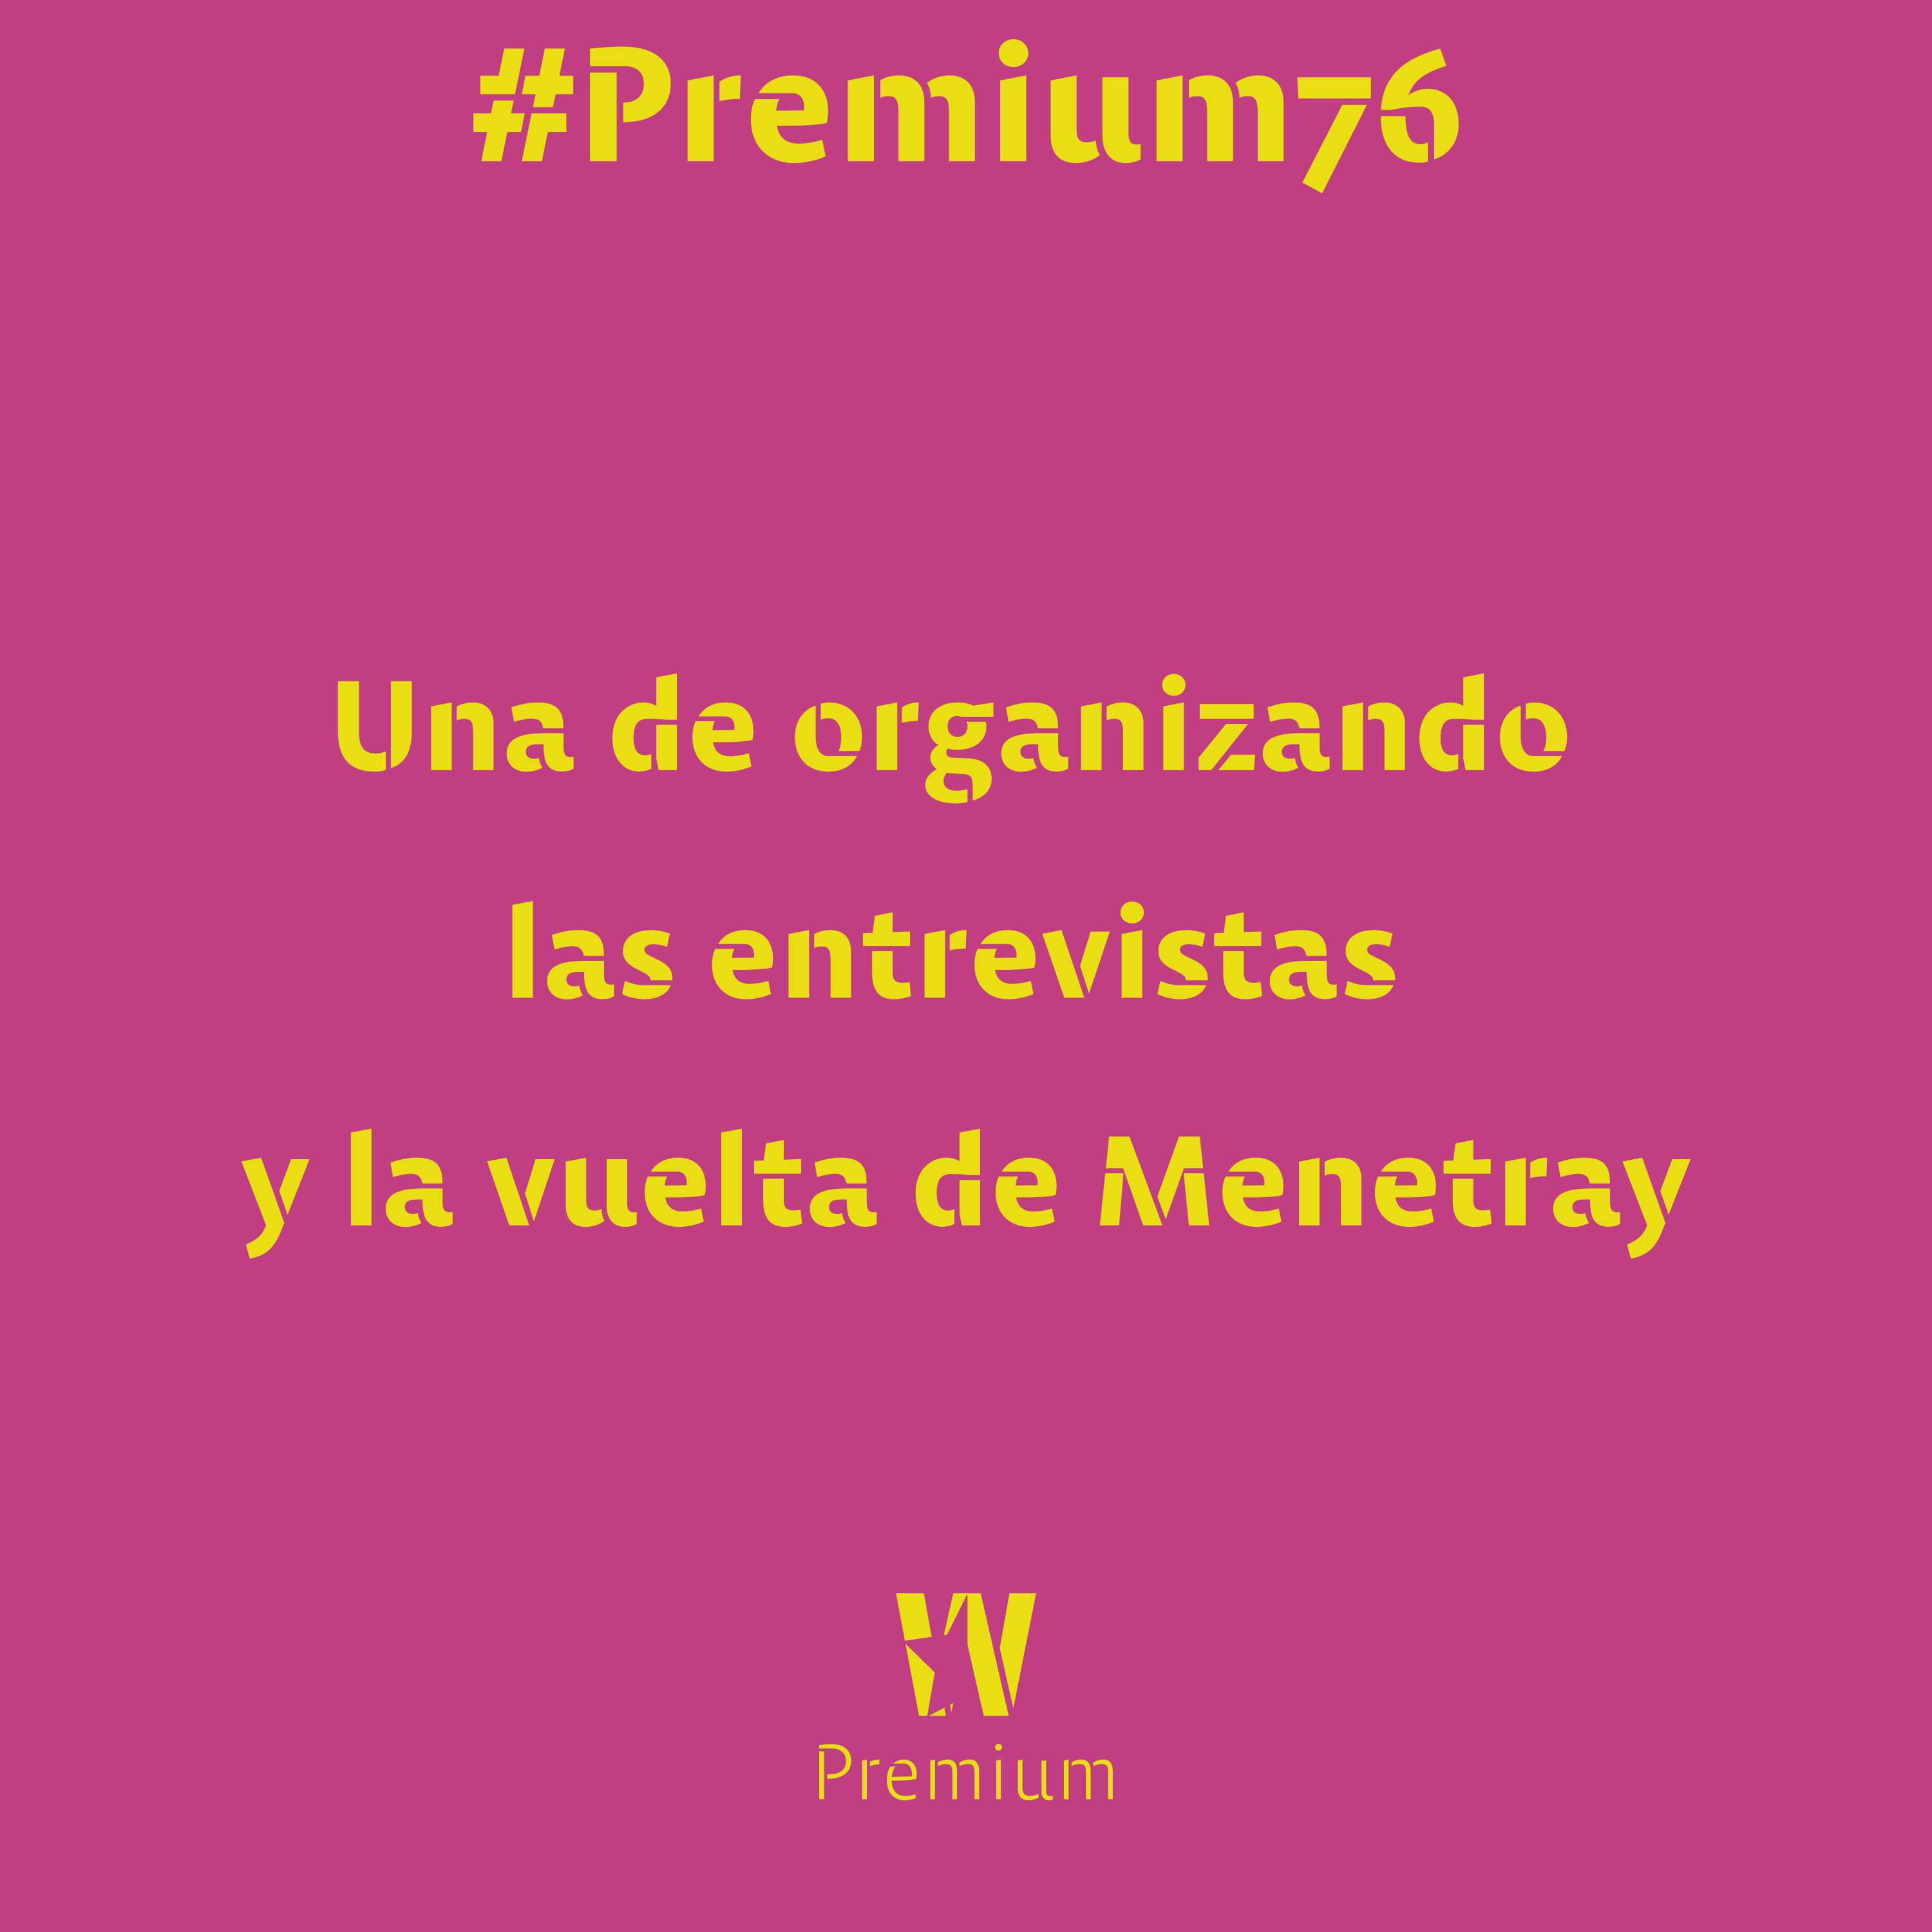 #Premium76 - Una de organizando las entrevistas y la vuelta de Menetray